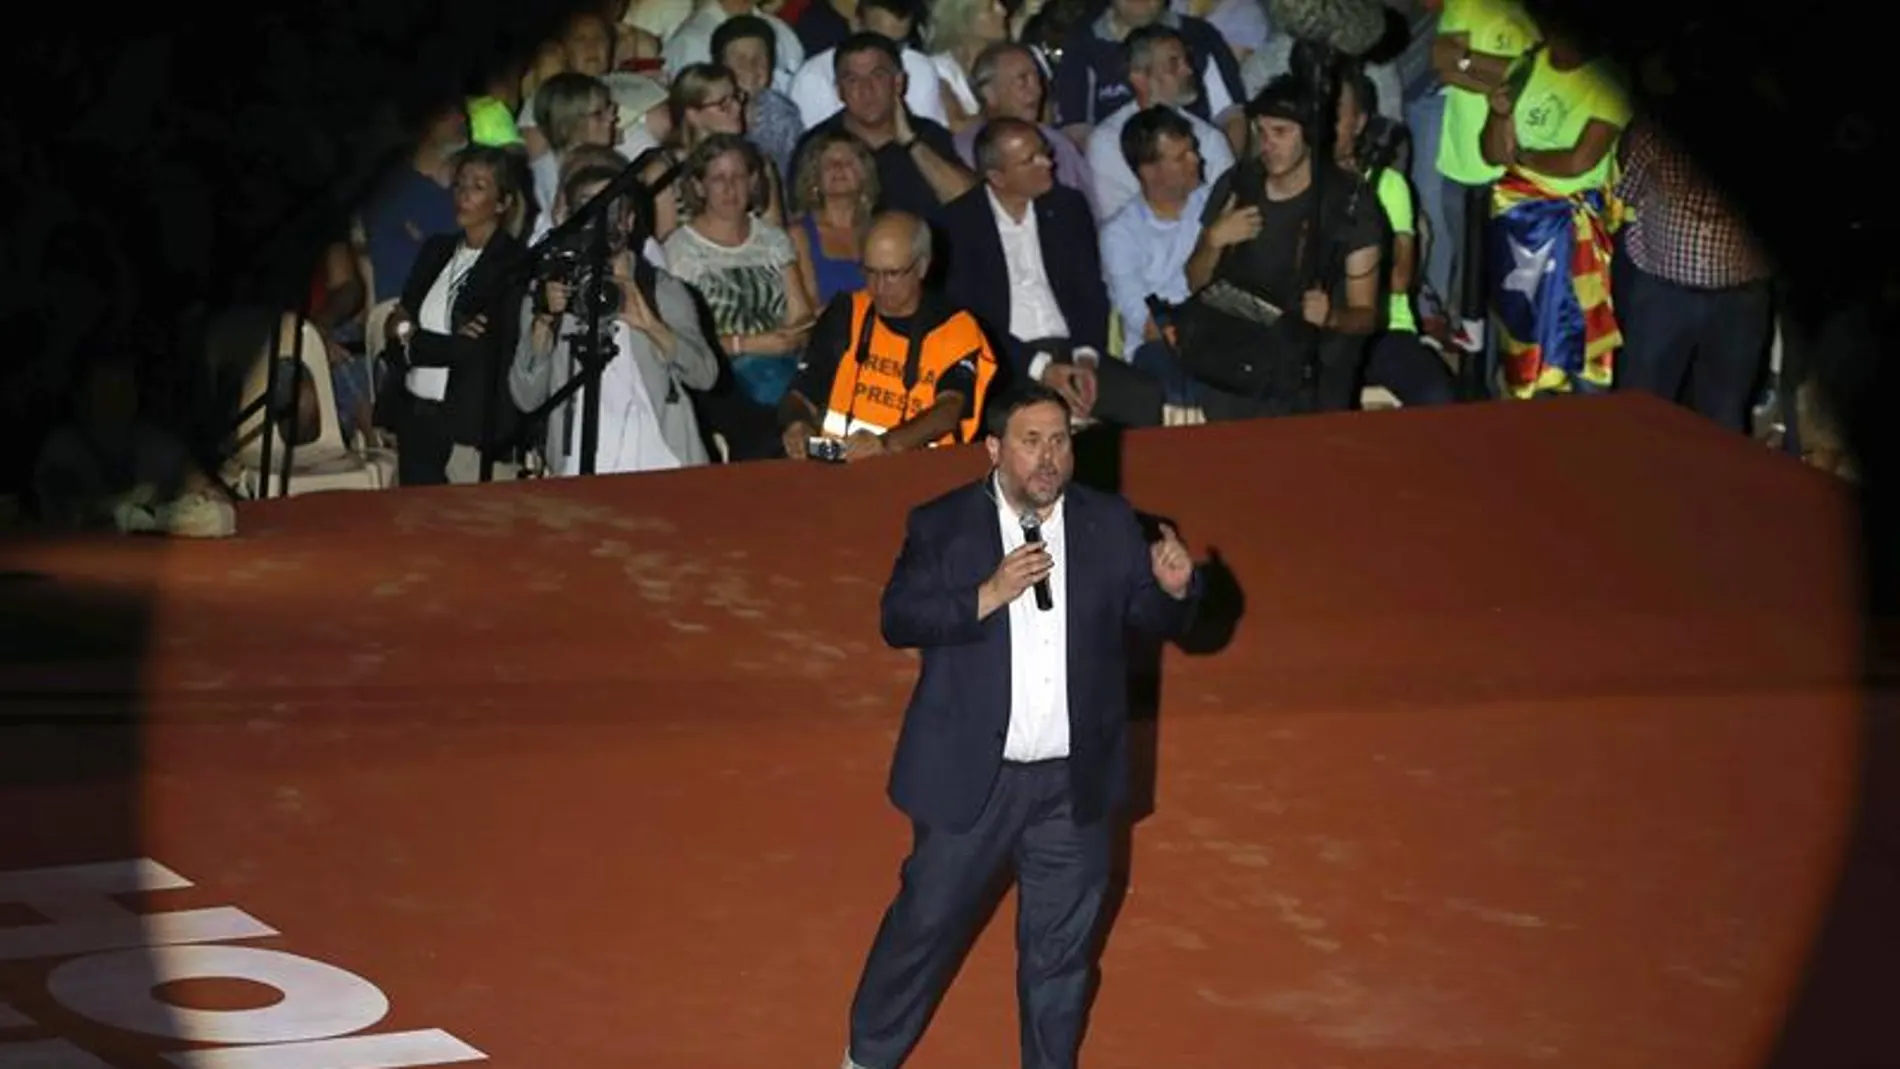 El vicepresidente del Govern, Oriol Junqueras durante su intervención en el Tarraco Arena